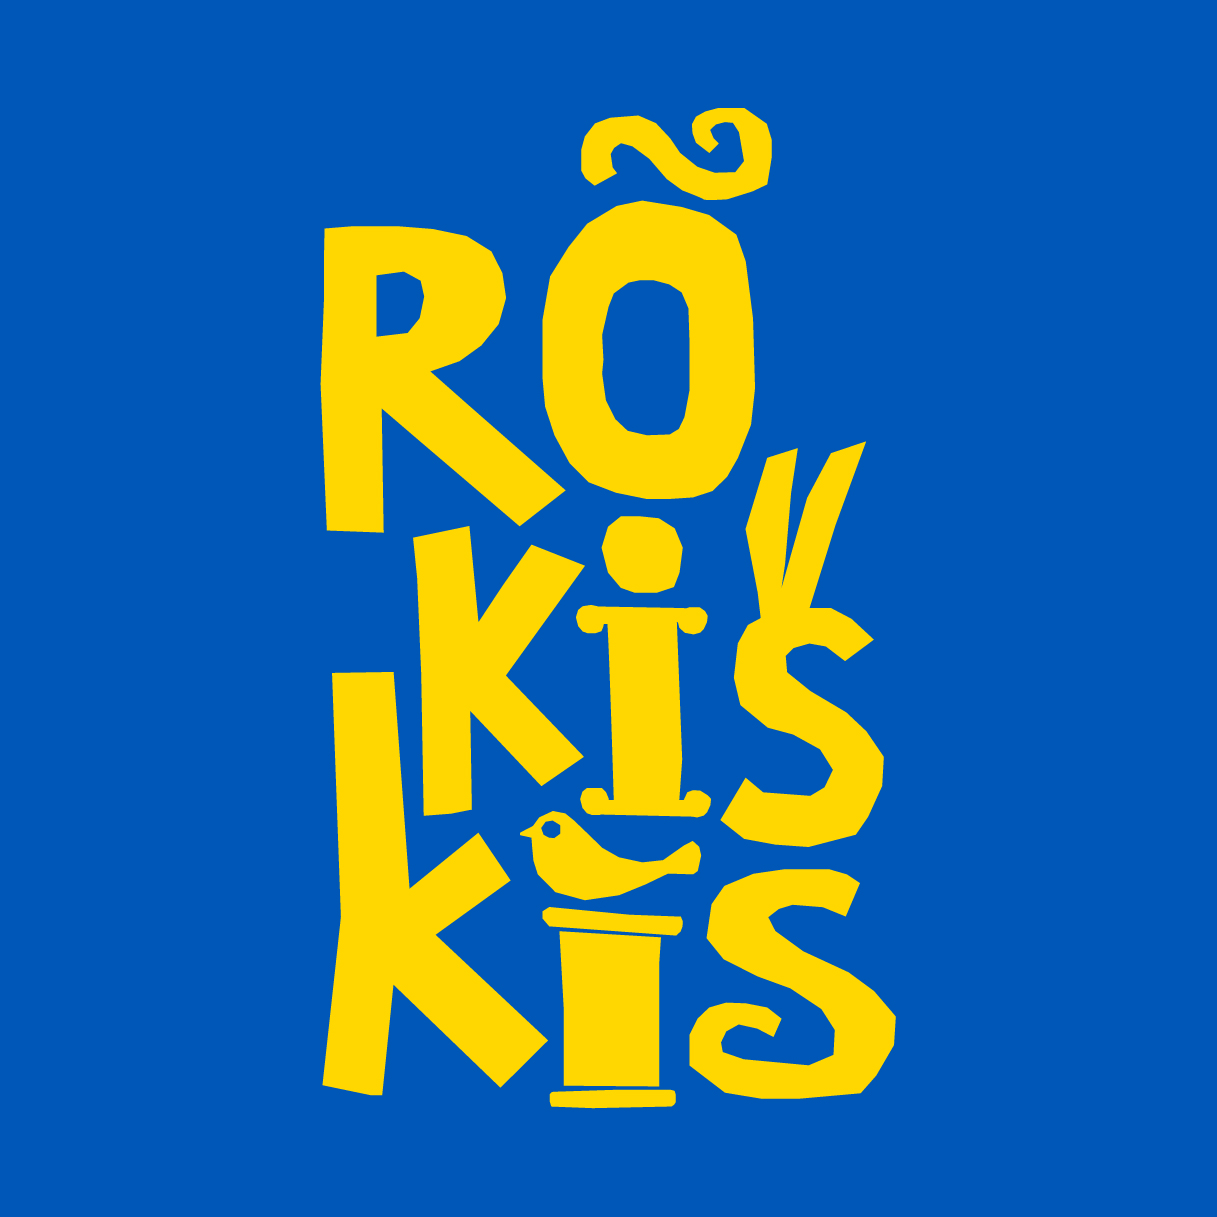 Rokiškio rajono savivaldybė solidarizuojasi ir yra pasirengusi priimti pabėgėlius iš Ukrainos. Ap...